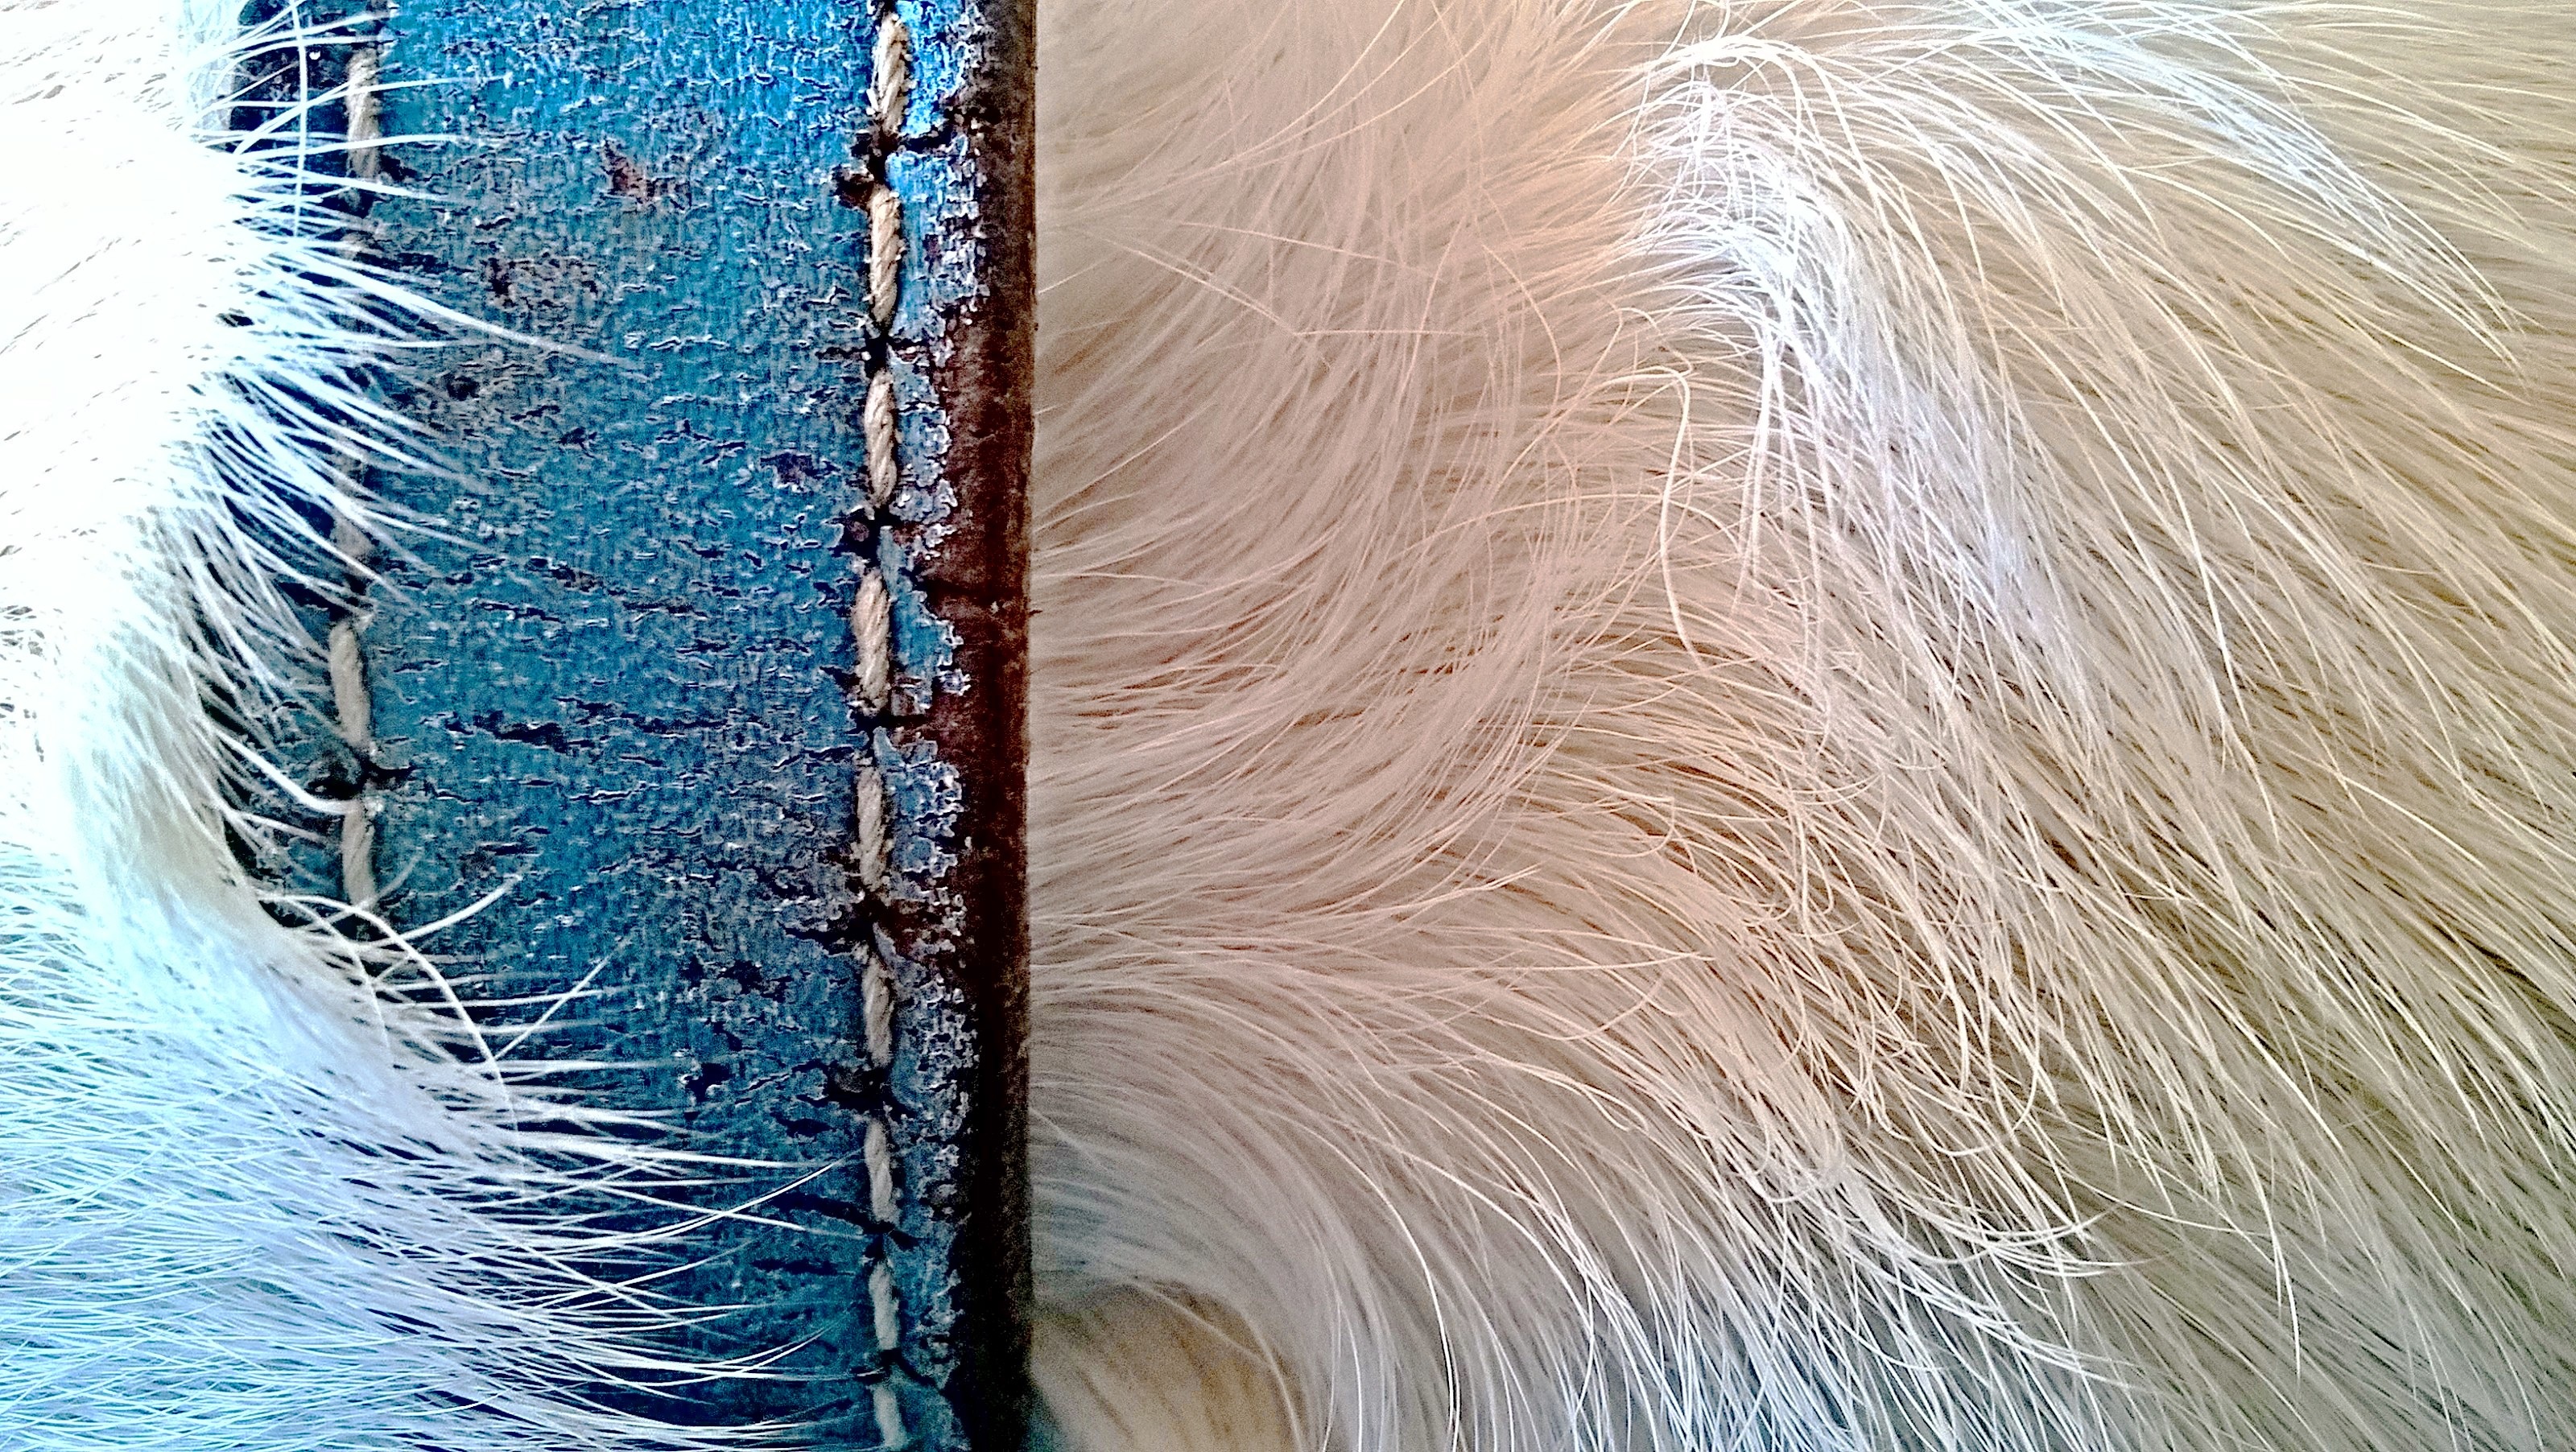 Что такое остевой волос у собаки